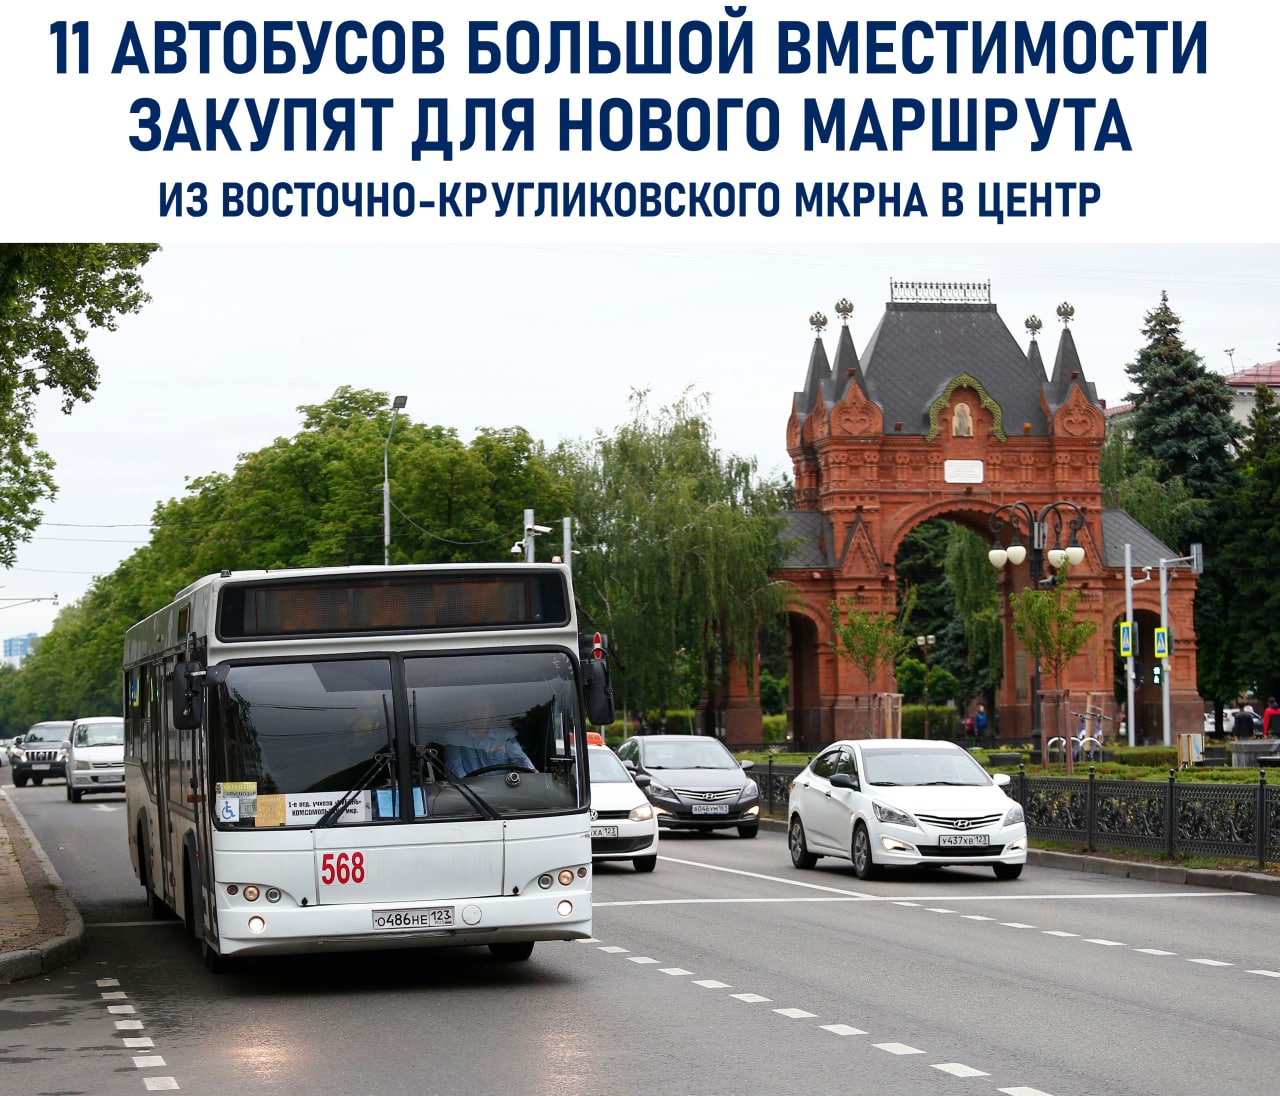 11 автобусов большой вместимости хотят закупить для нового маршрута в Краснодаре